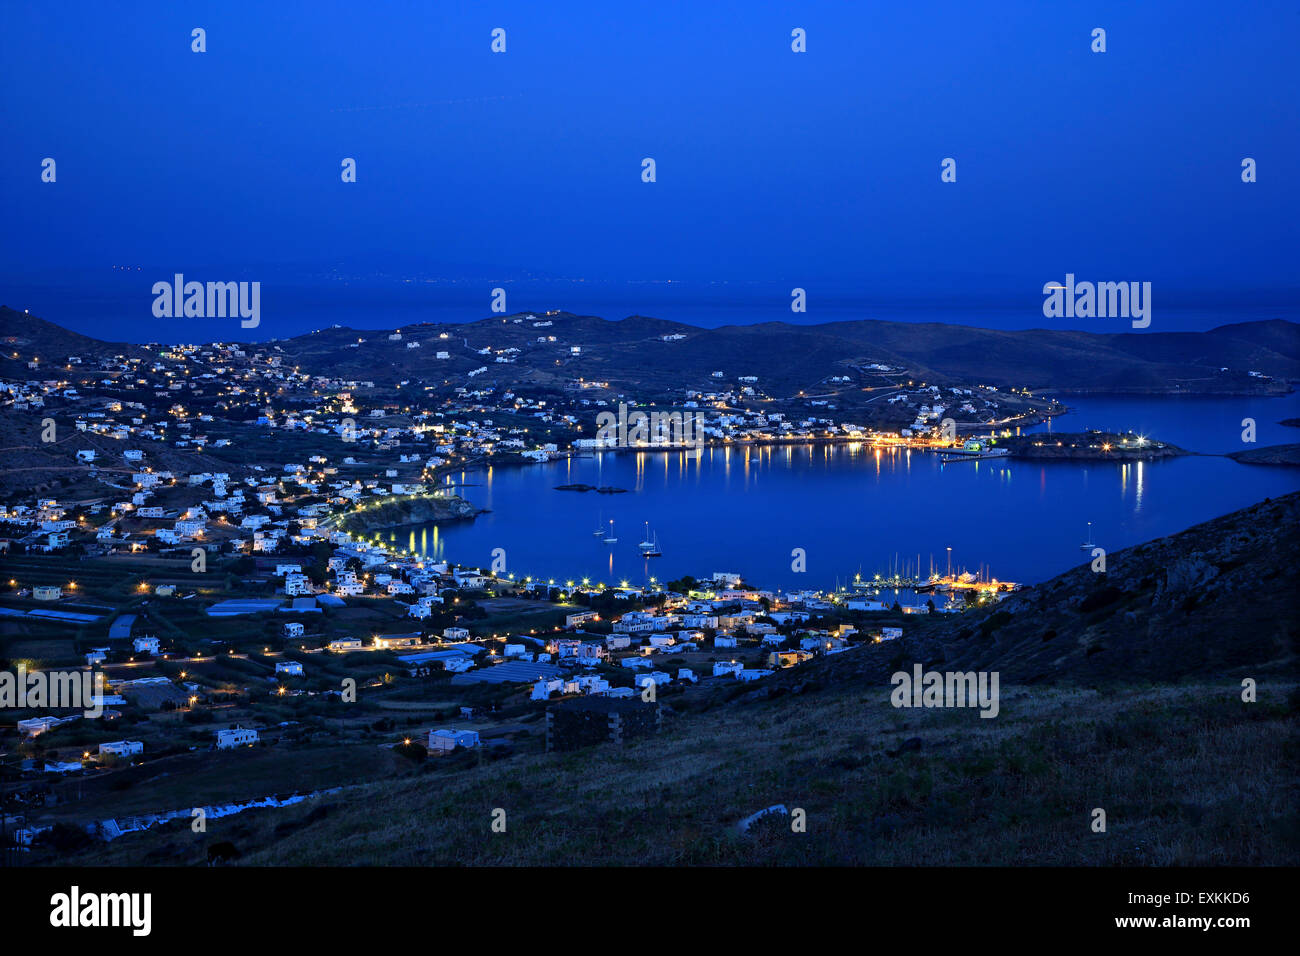 Foinikas (front) & Poseidonia (back -old name "Dellagrazia") villages, Syros island, Cyclades, Aegean sea, Greece. Stock Photo